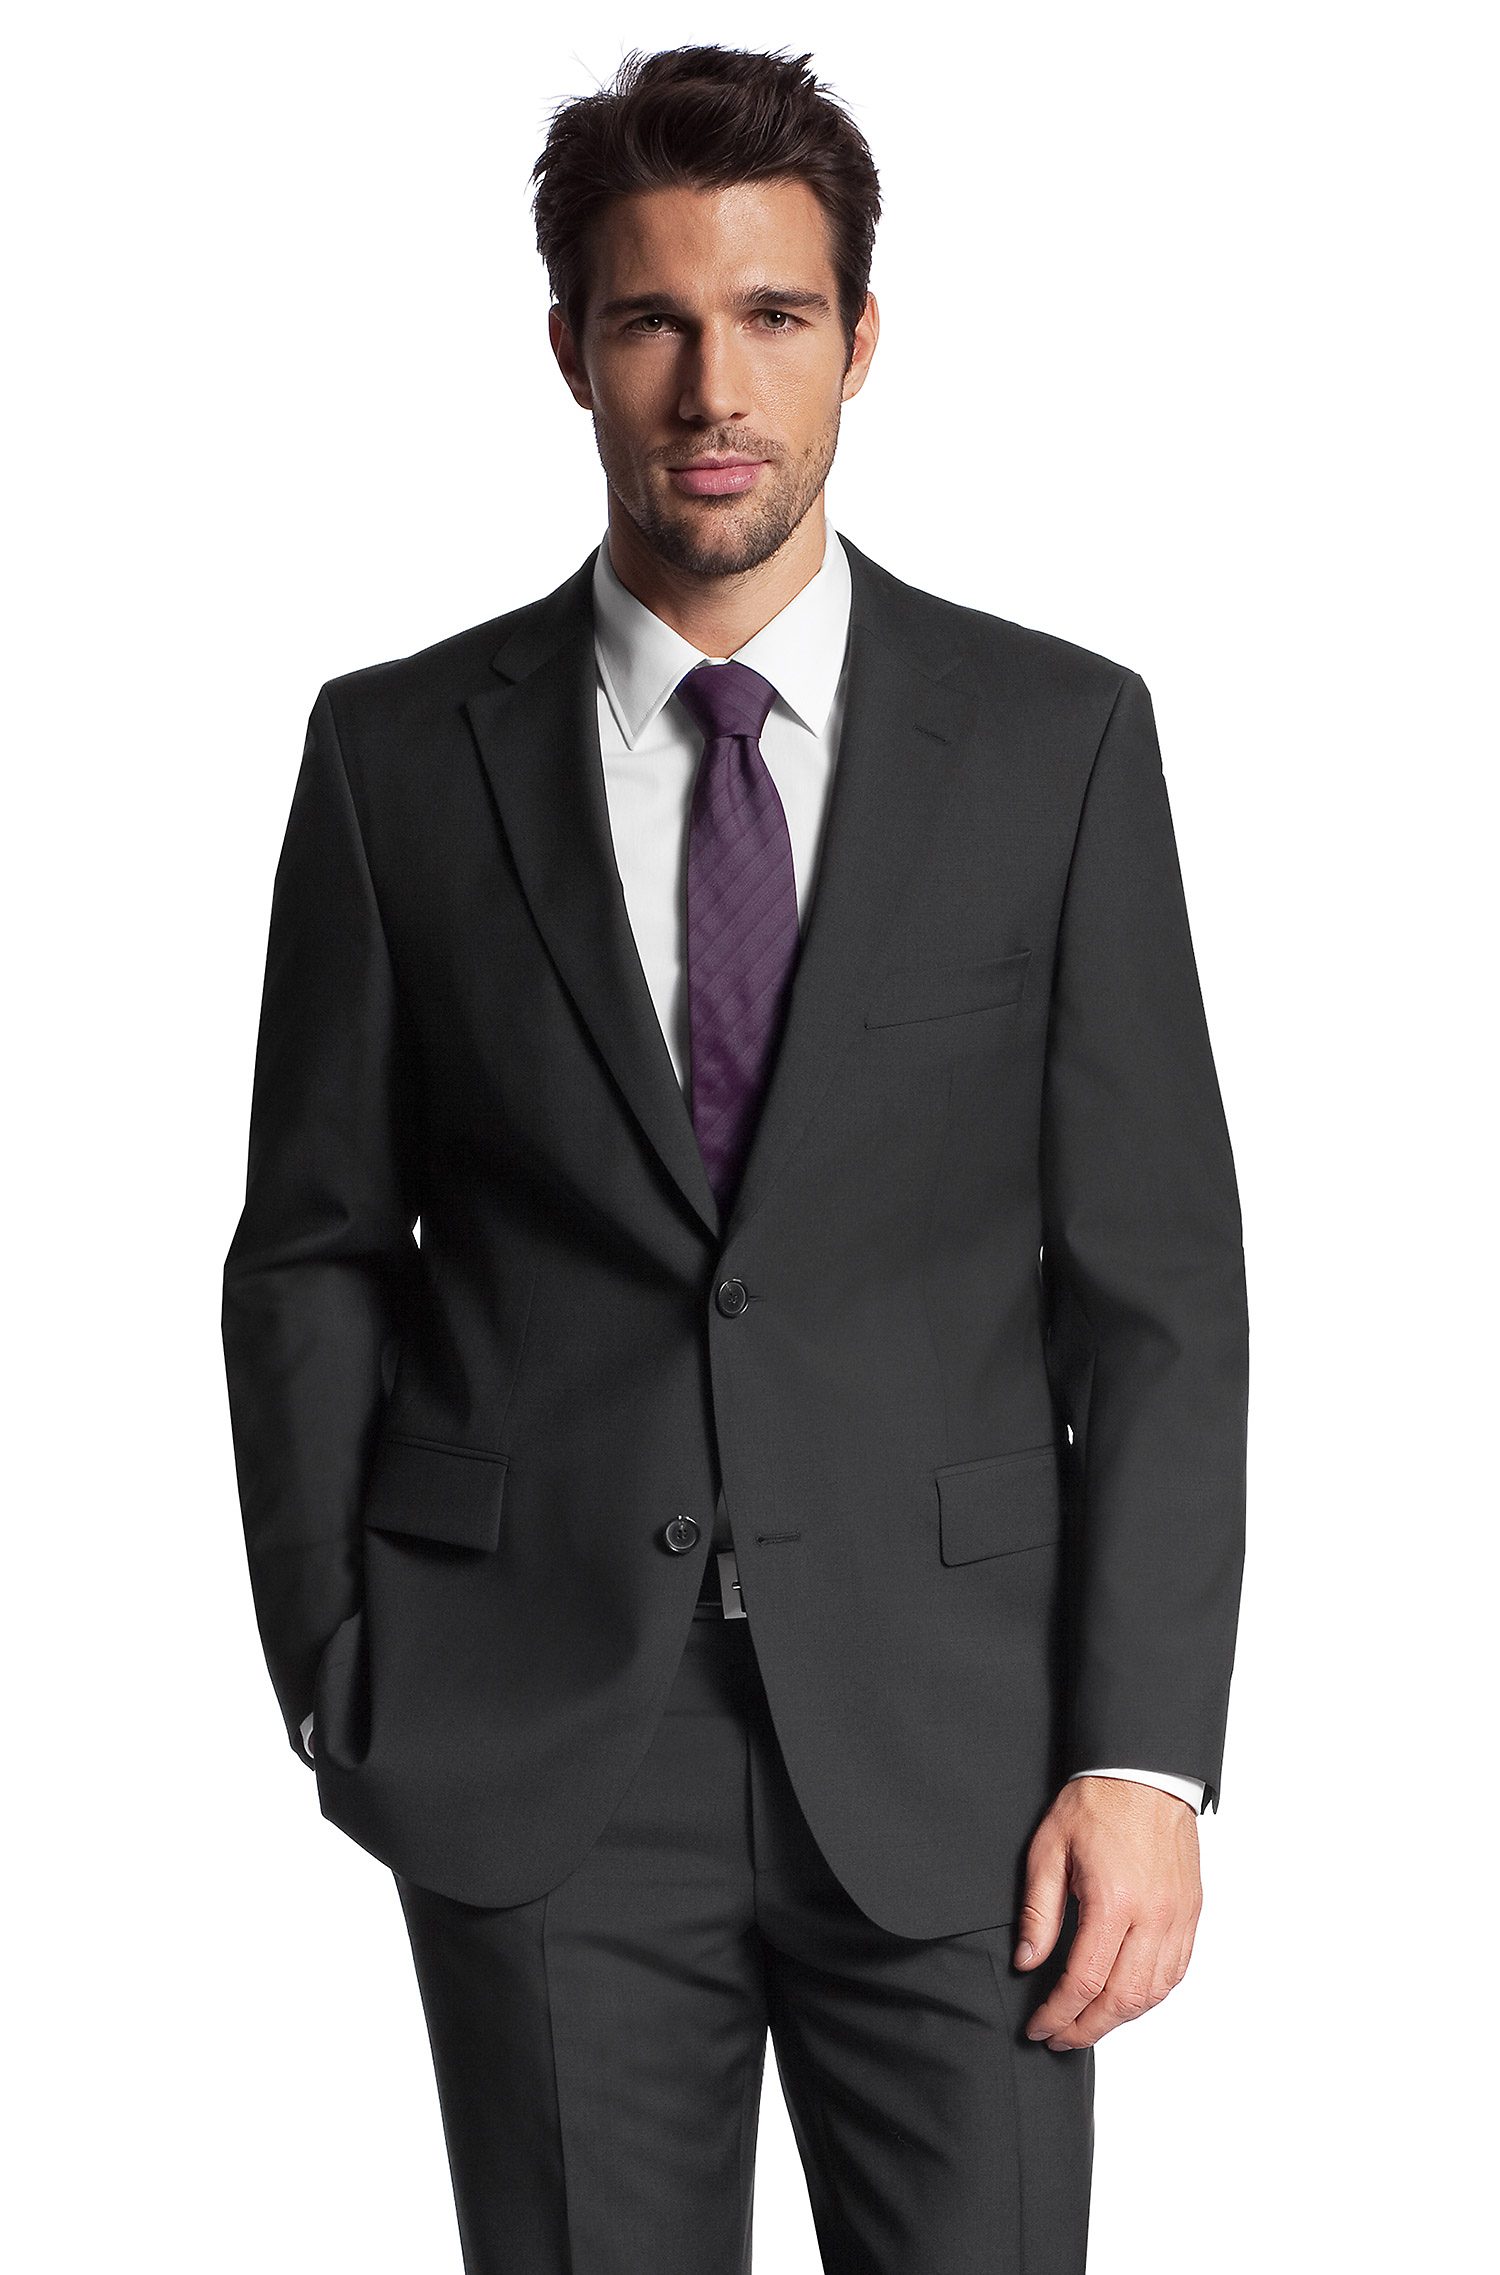 Top Men's Suiting Brands 2021 In Pakistan - StyleGlow.com